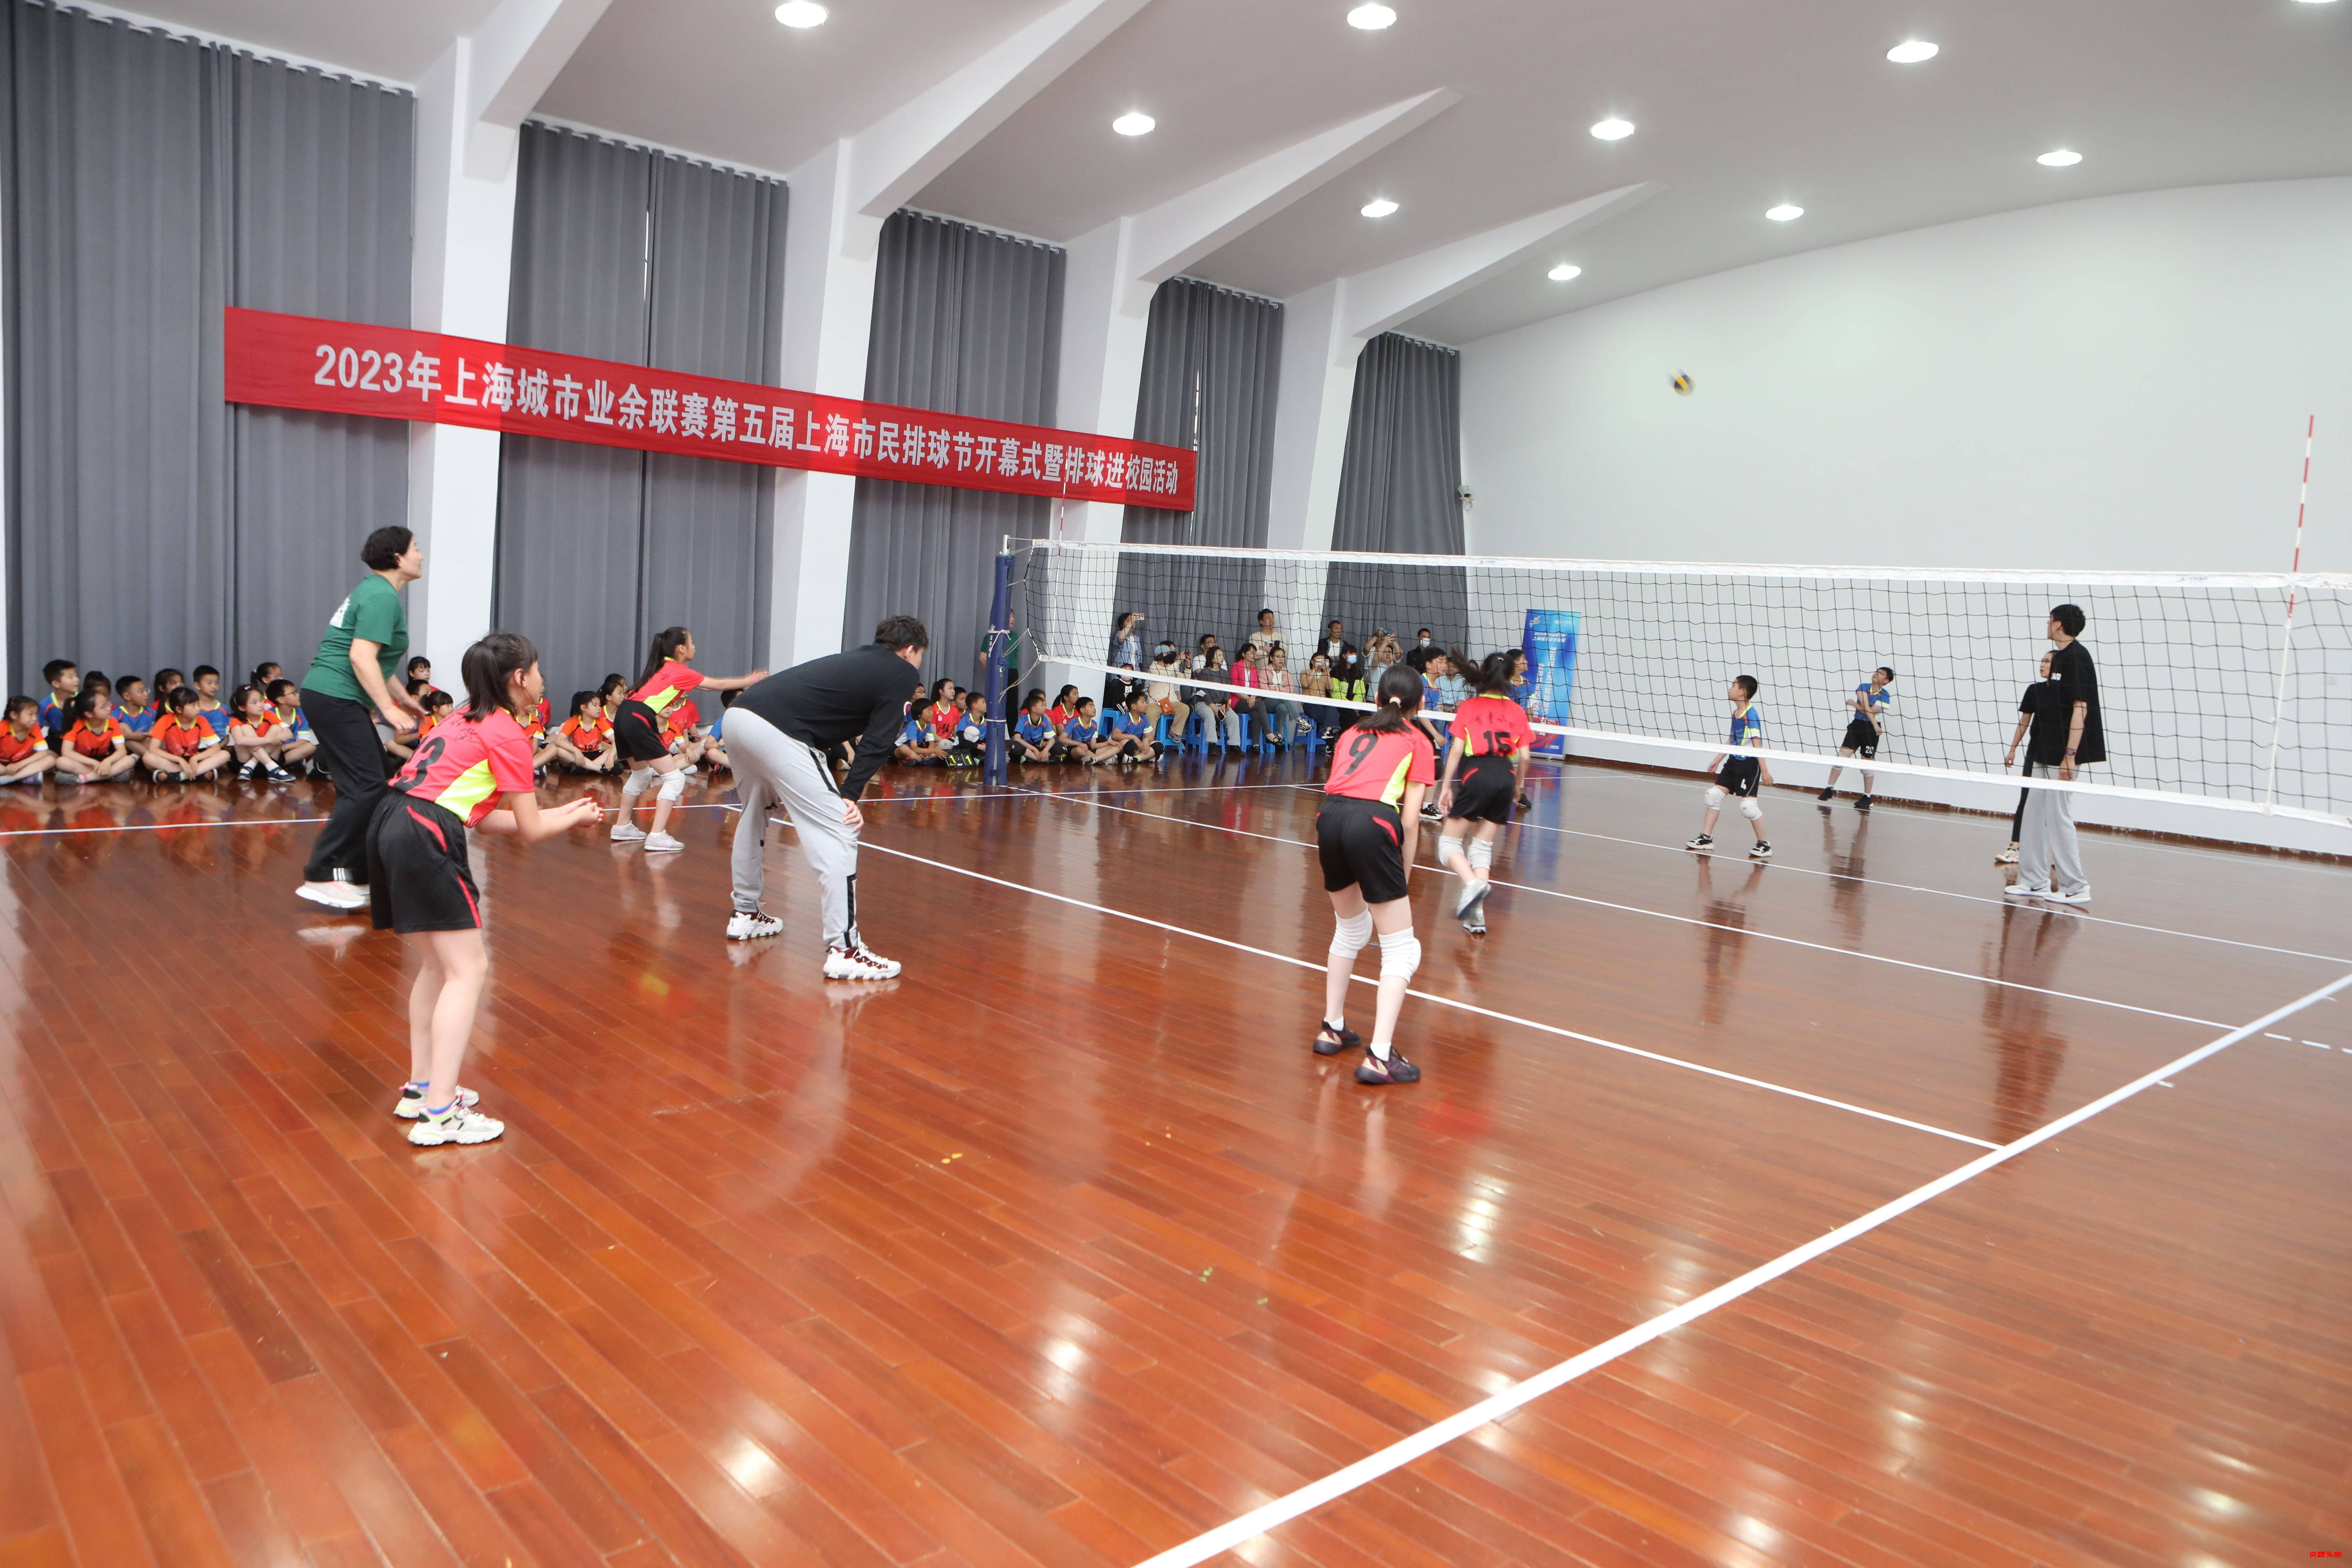 第五届上海市民排球节开幕式暨排球进校园活动 喜迎四名形象大使